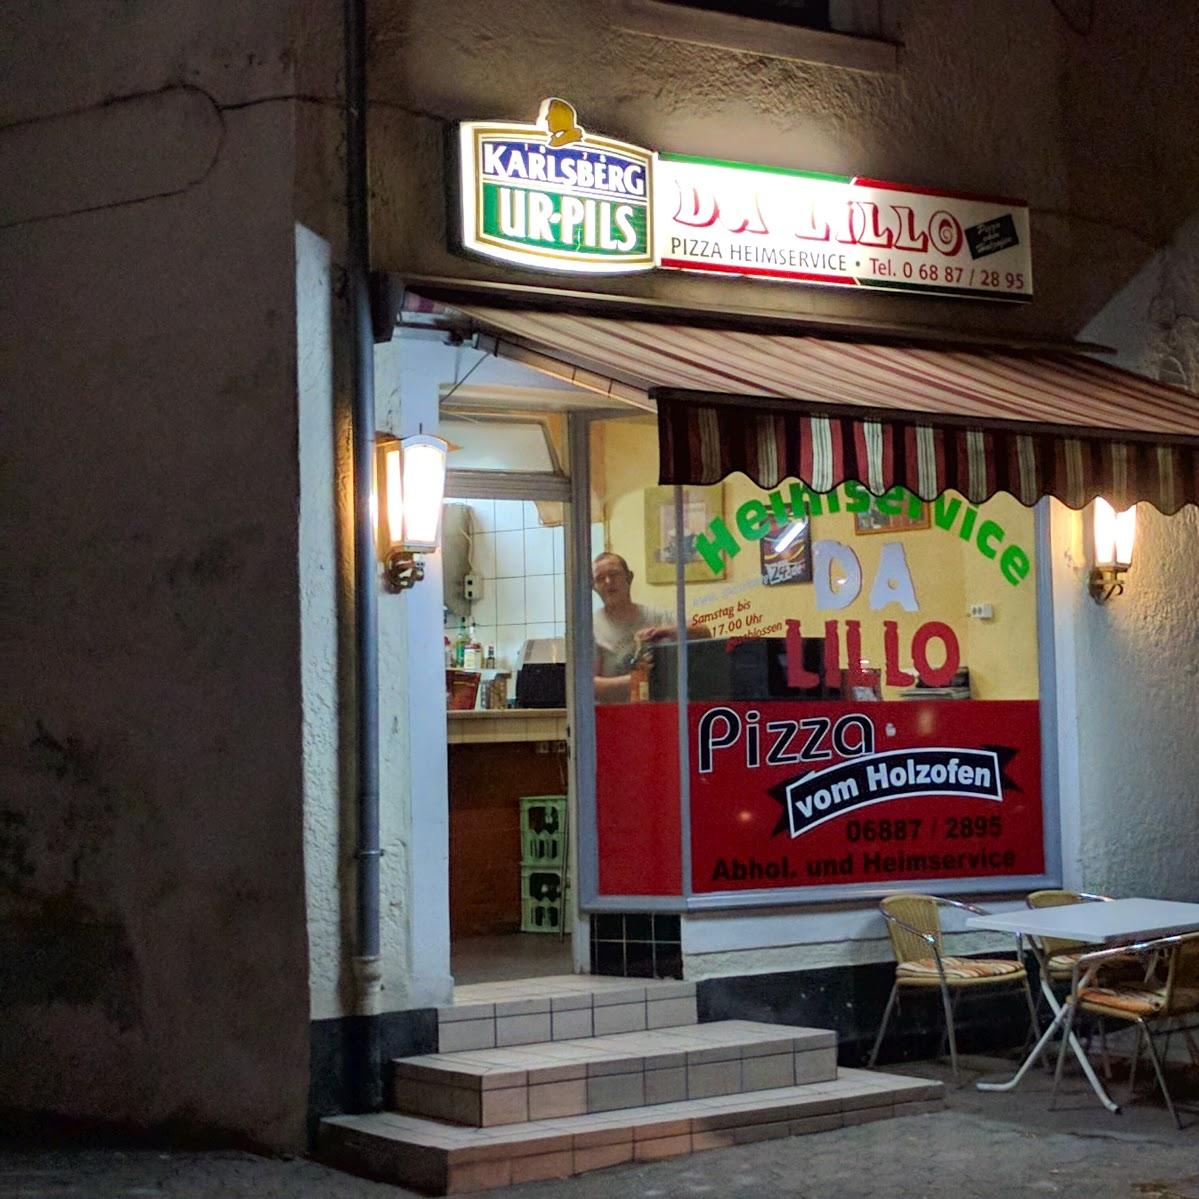 Restaurant "Pizzeria Da Lillo" in Schmelz